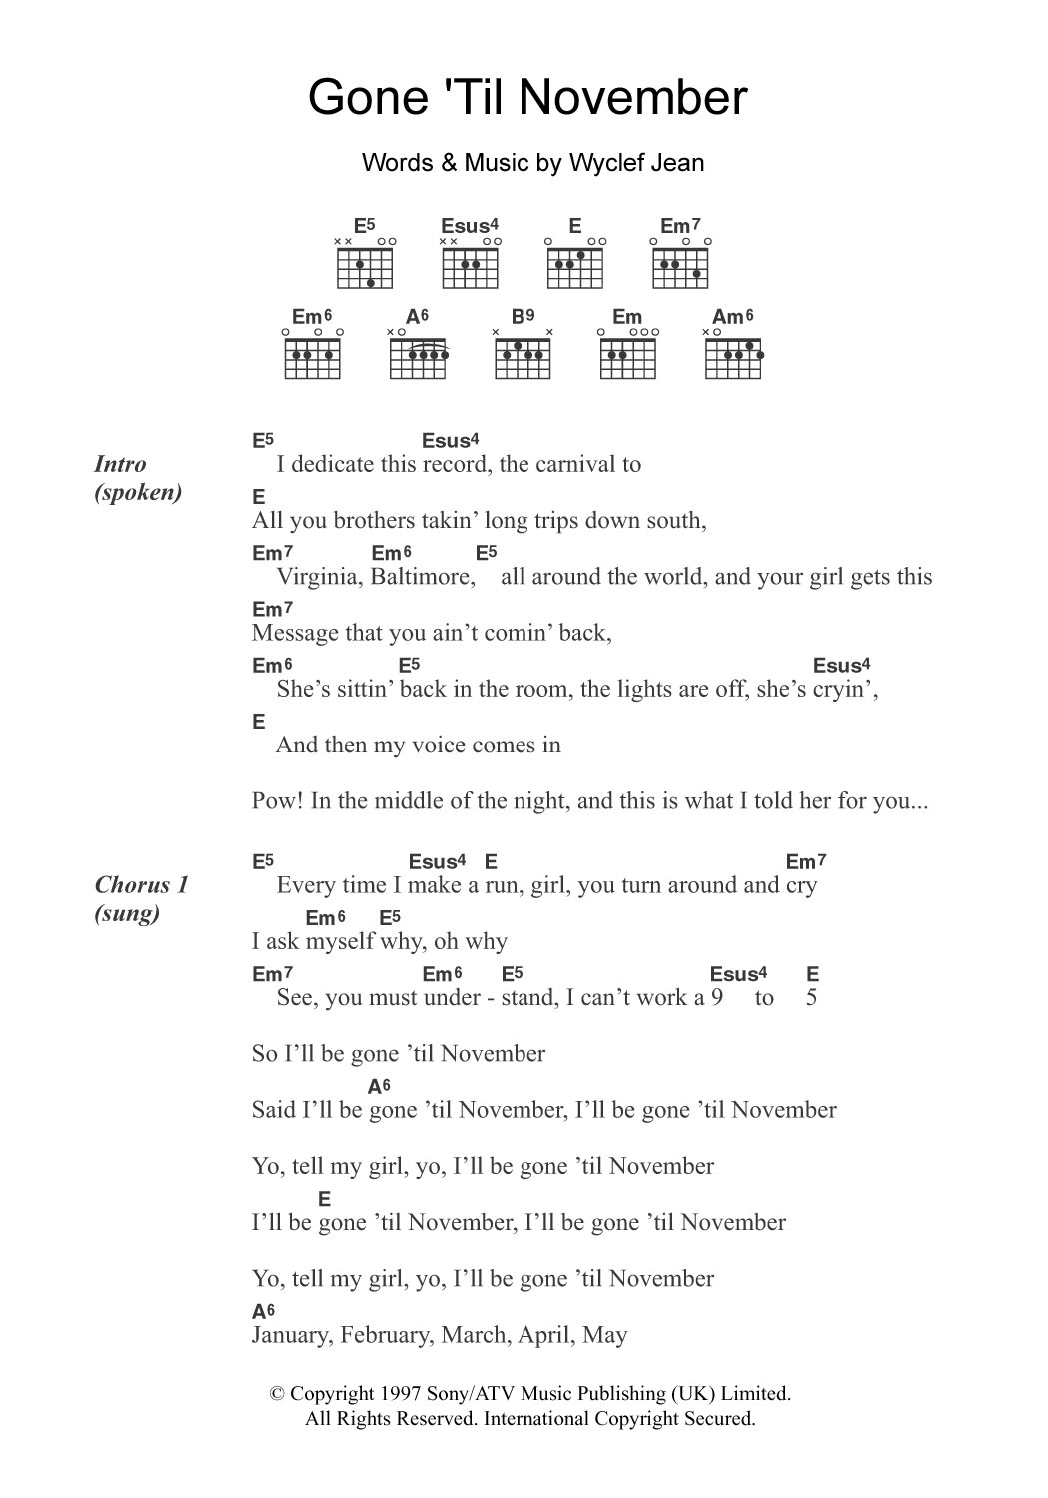 Wyclef Jean Gone 'Til November Sheet Music Notes & Chords for Guitar Chords/Lyrics - Download or Print PDF